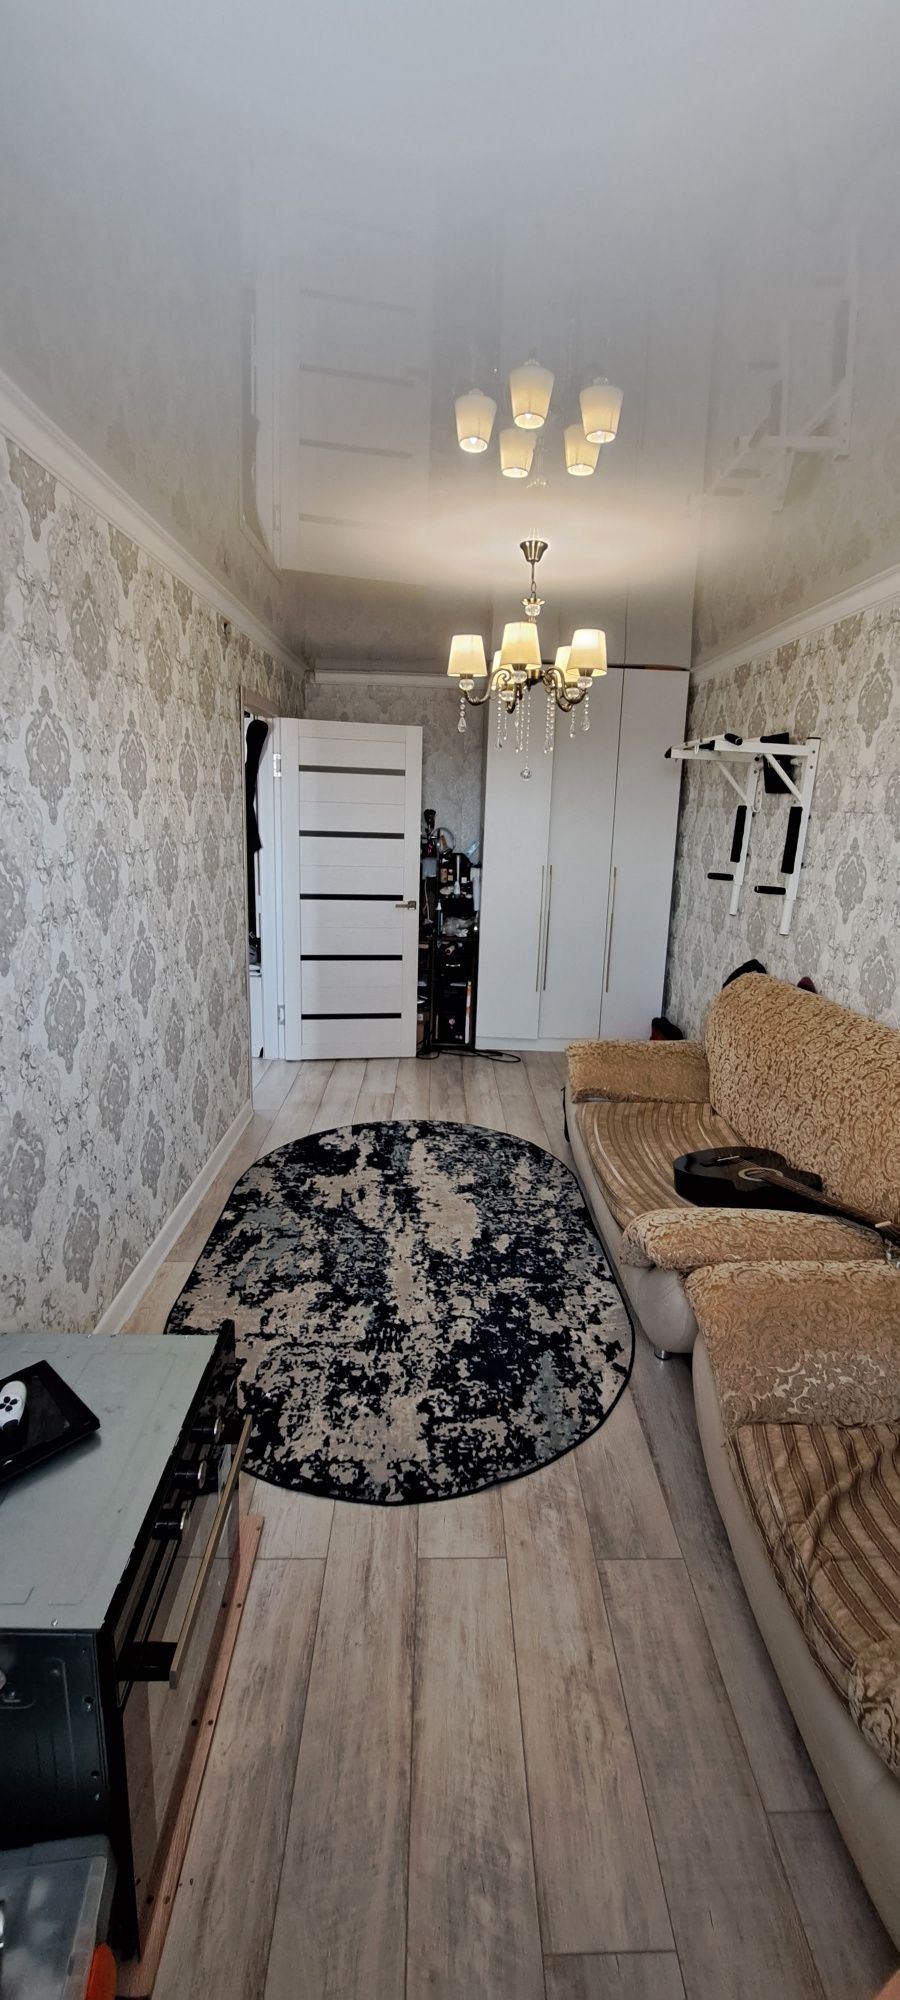 Продам квартиру  в Майкудуке 14мкр 22 дом  2-× комнатную с ремонтом